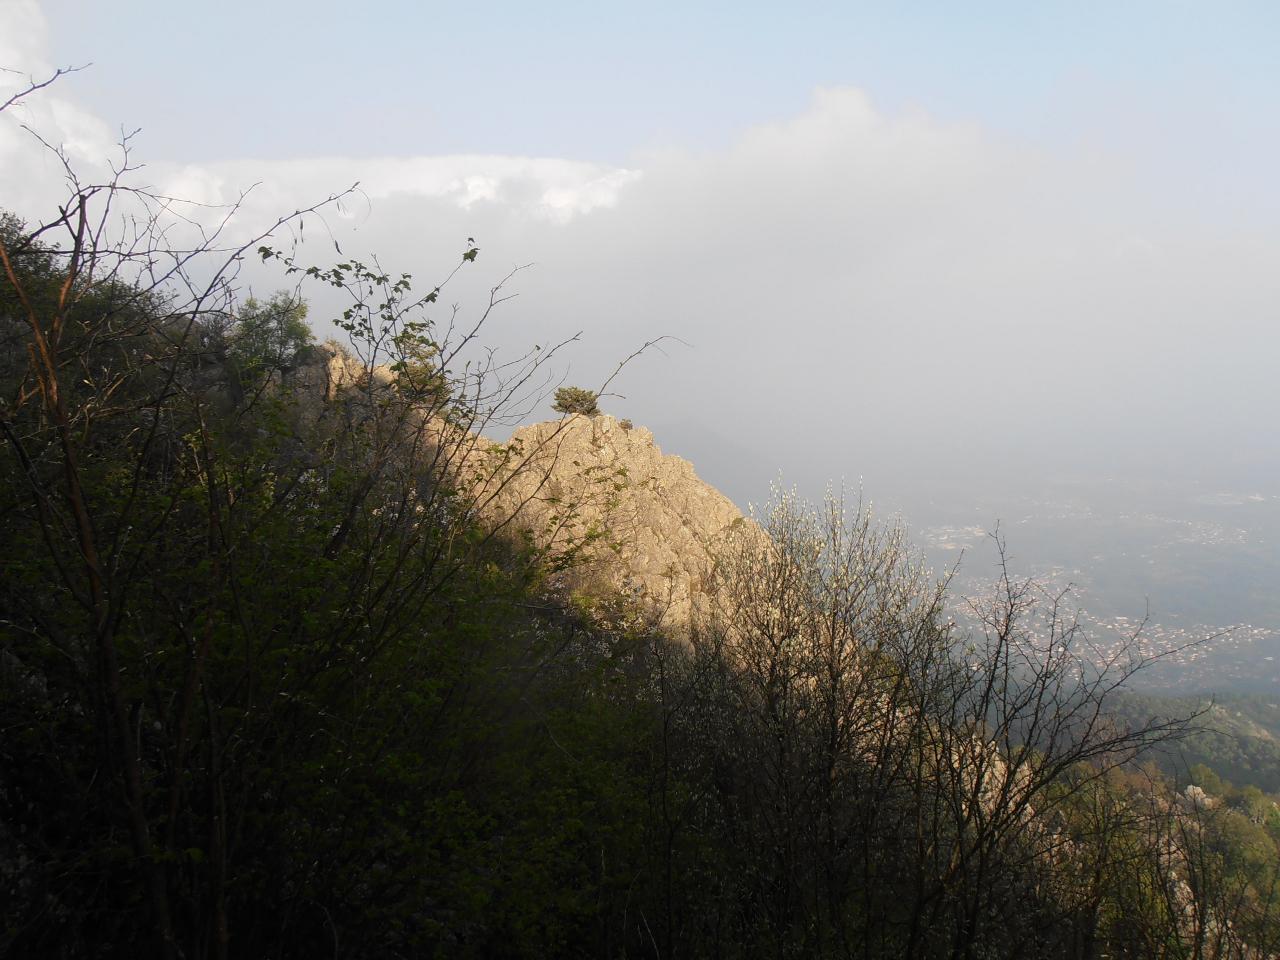 04 - Cresta della via Amici, vista dal sentiero Vignale